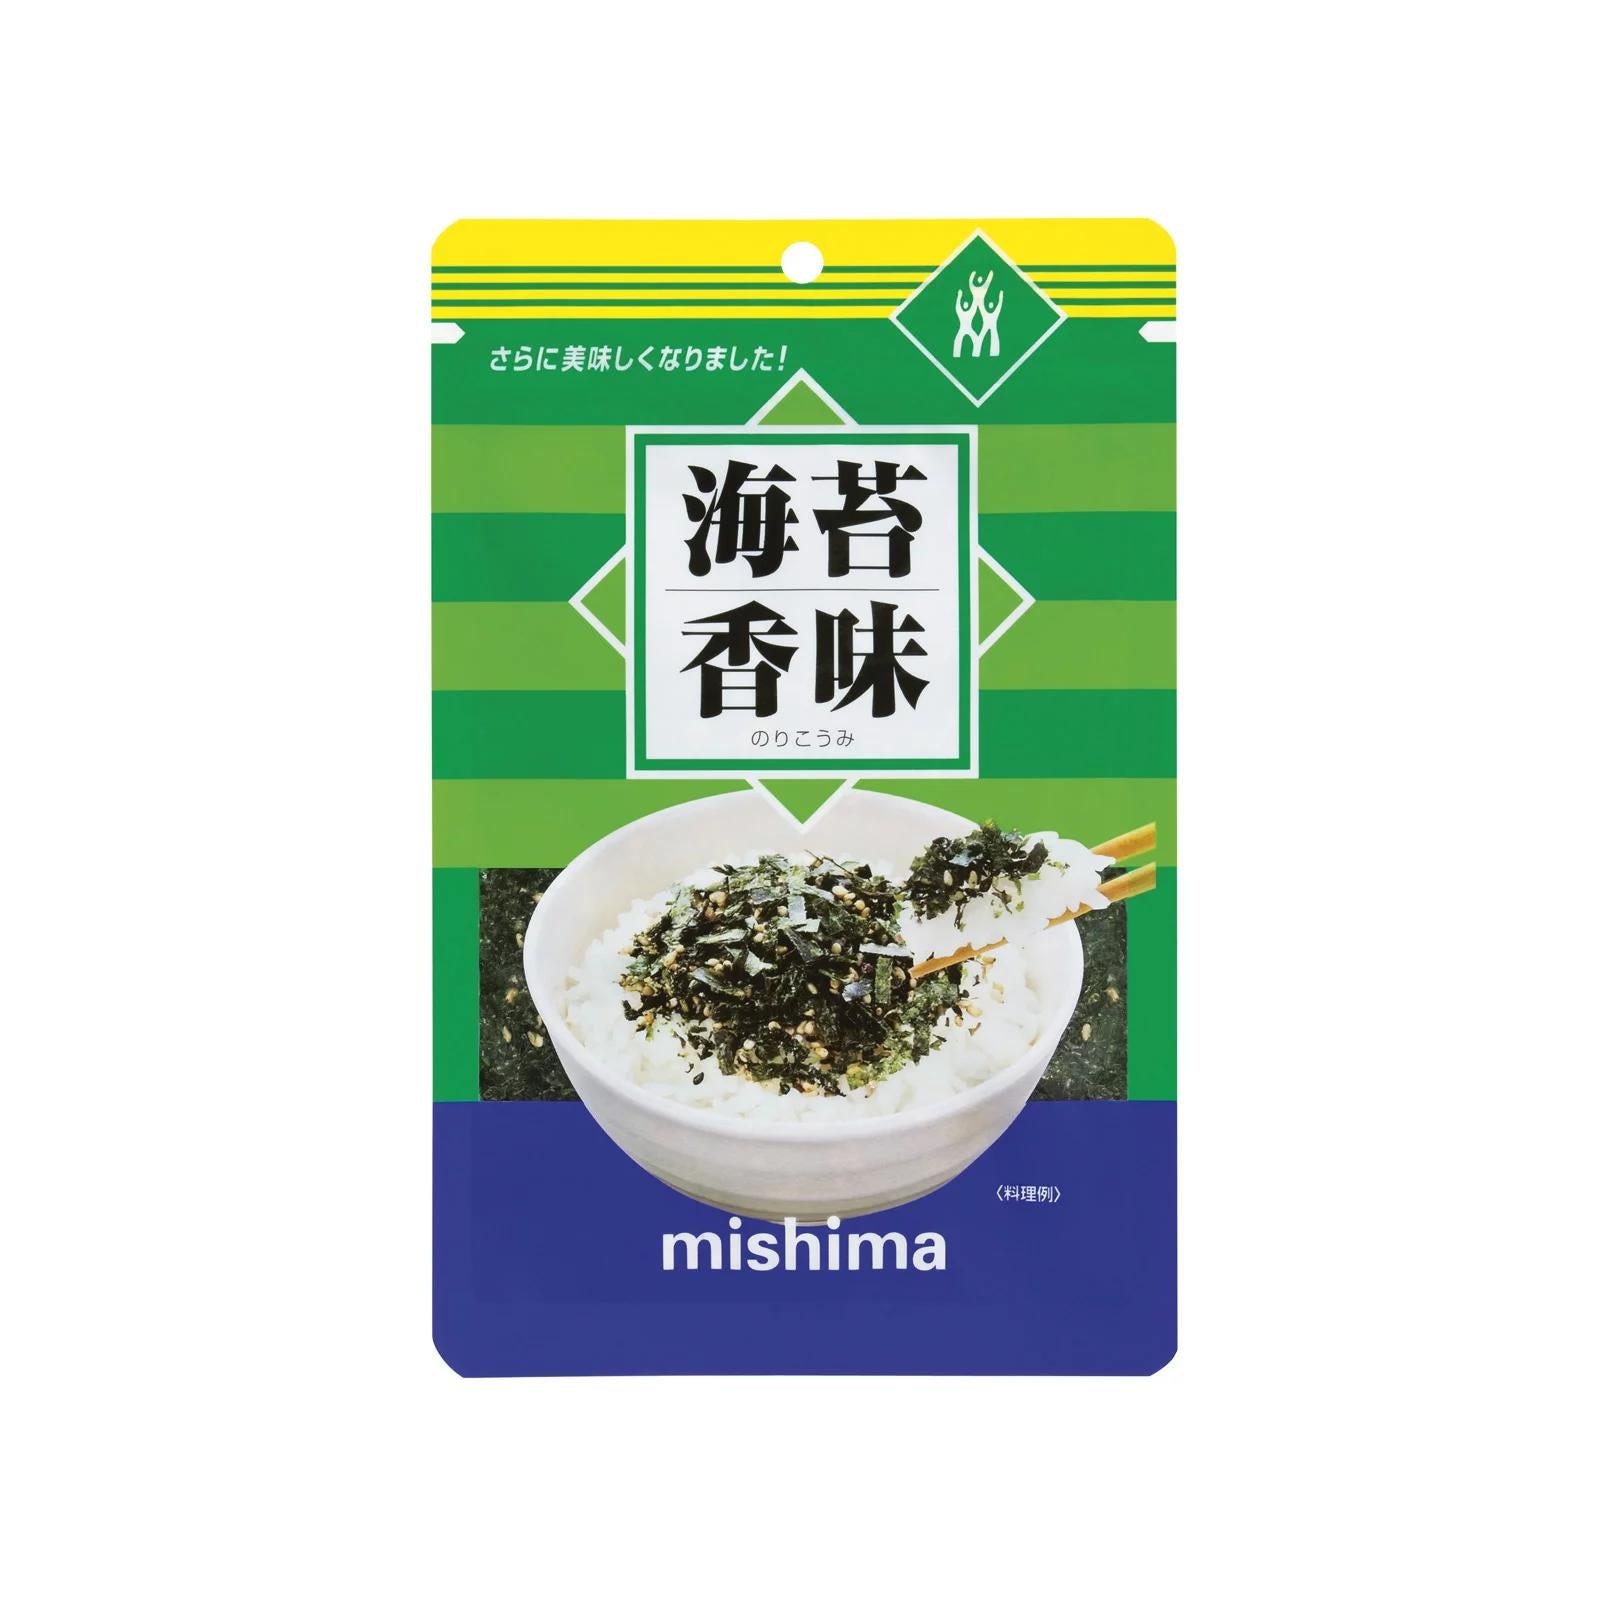 Mishima Nori Komi Furikake Sesame Seed & Nori Seaweed Rice Seasoning 36g